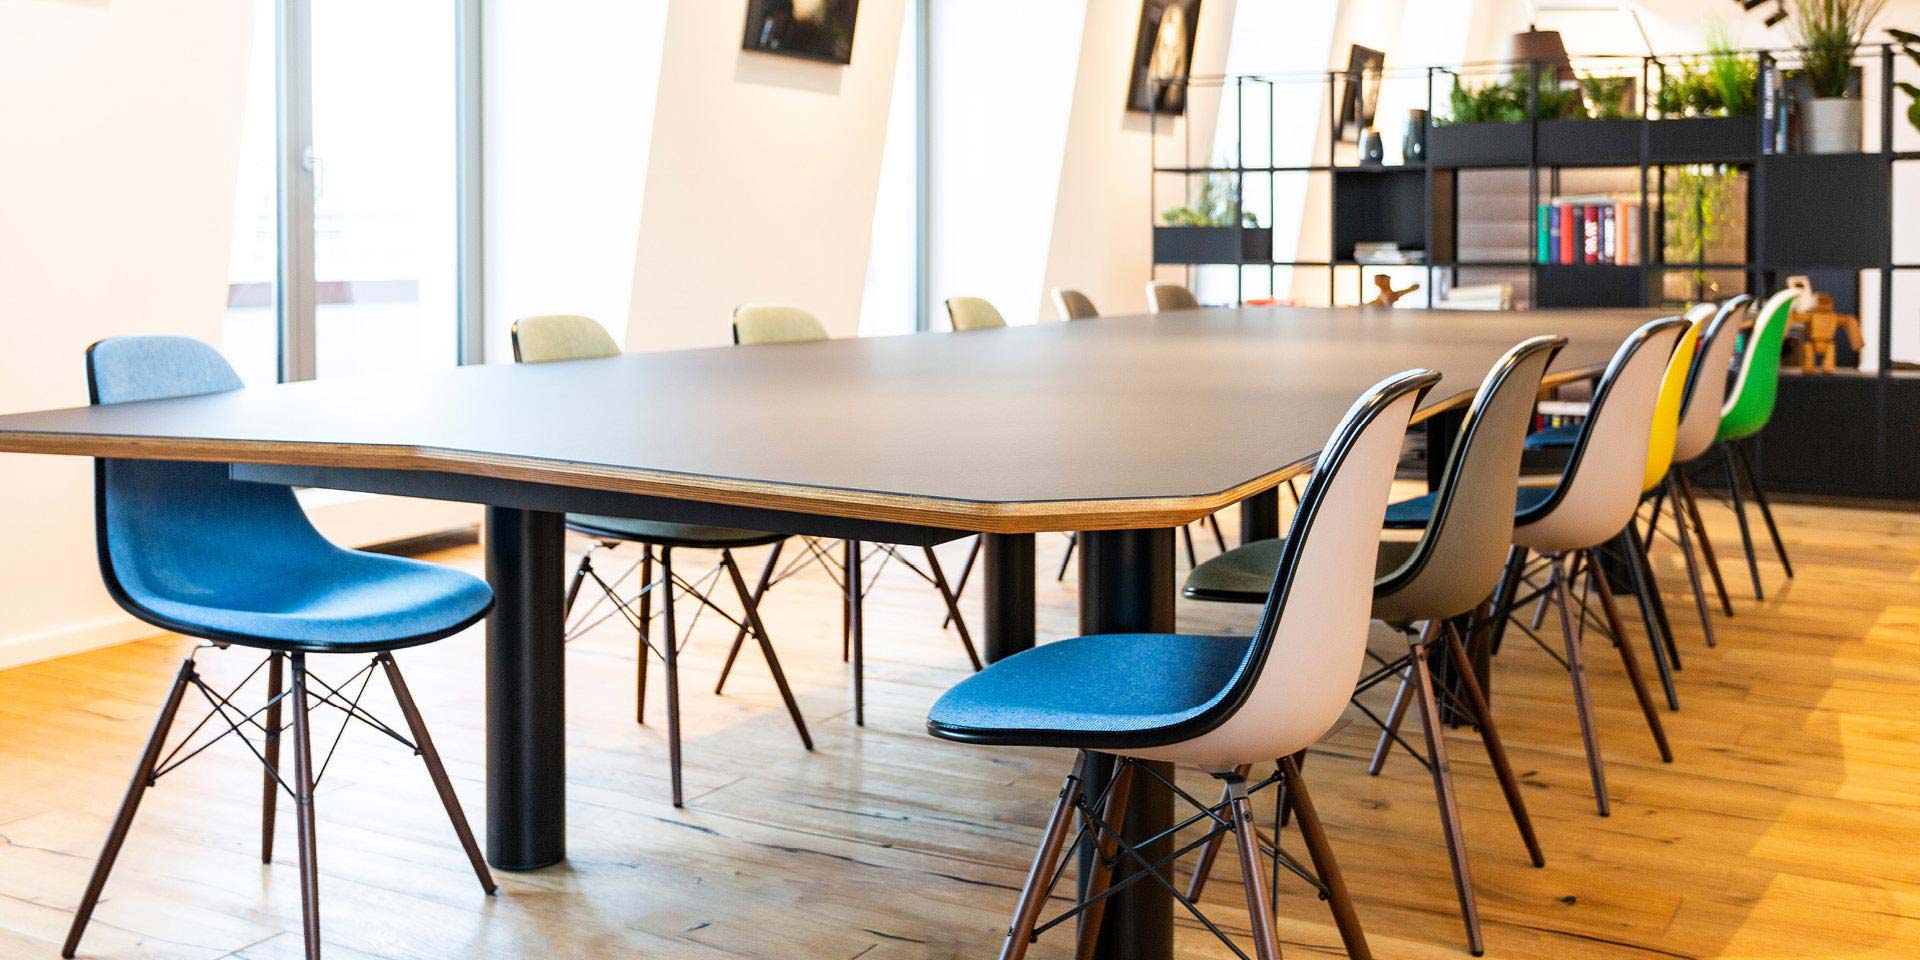 Objektmöbel für Büro, Büromöbel & Businessmöbel - individuelle Konferenztische, Stühle, Regale für Büro, Praxis und Kanzlei - Möbeltischlerei woodendesign feine Möbel aus Hamburg